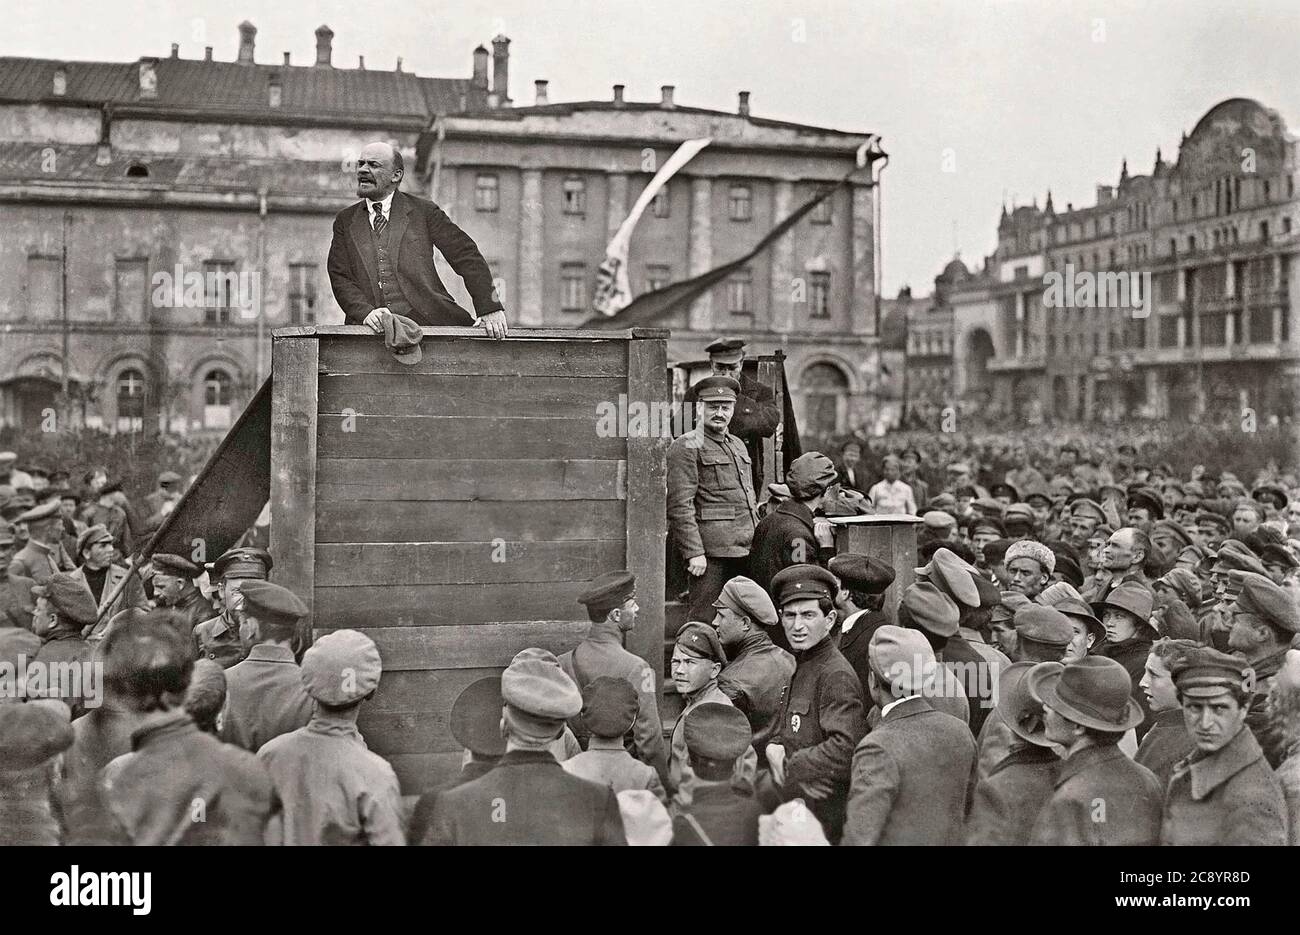 VLADIMIR LENIN (1870-1924) rivoluzionario russo in Piazza del Teatro, Mosca, 5 maggio 1920, rivolto ai soldati sovietici sulla strada per il fronte polacco. Sui gradini della piattaforma Leon Trotsky si trova di fronte a Lev Kamenev. I censori sovietici successivamente hanno rimosso le loro immagini. Foto: Grigory Goldstein Foto Stock